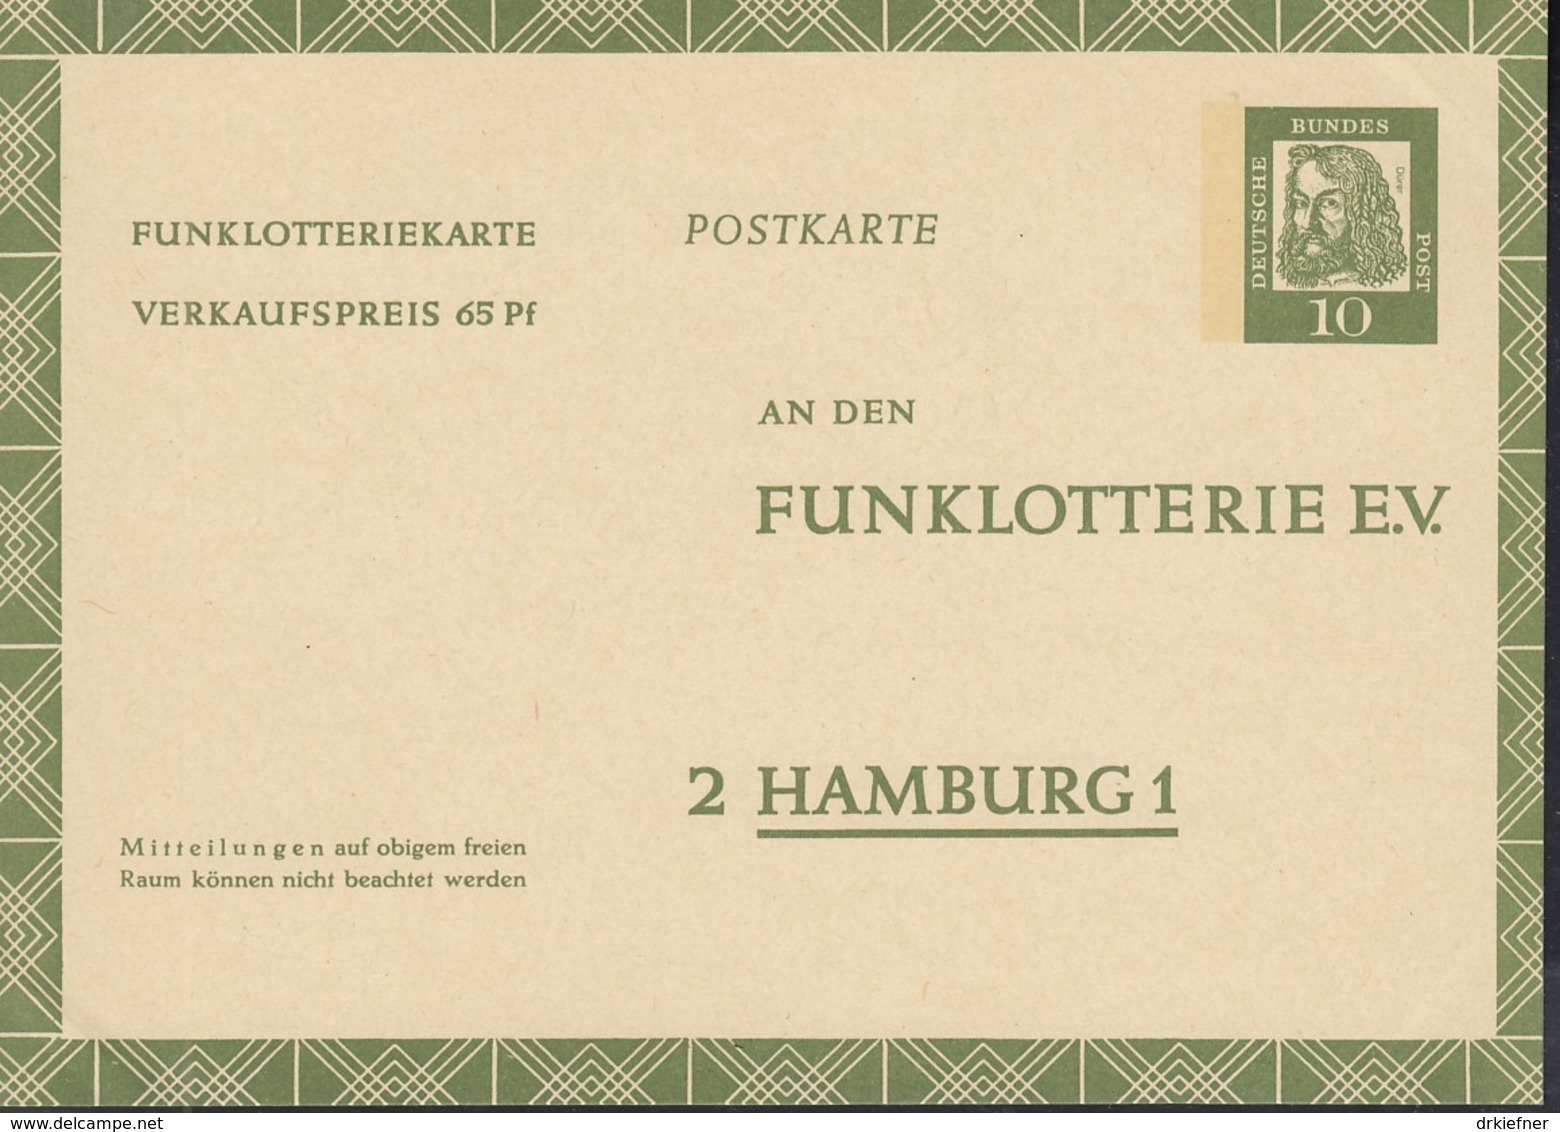 BRD  FP 9, Ungebraucht, Funklotteriekarte 1961 - Postkarten - Ungebraucht